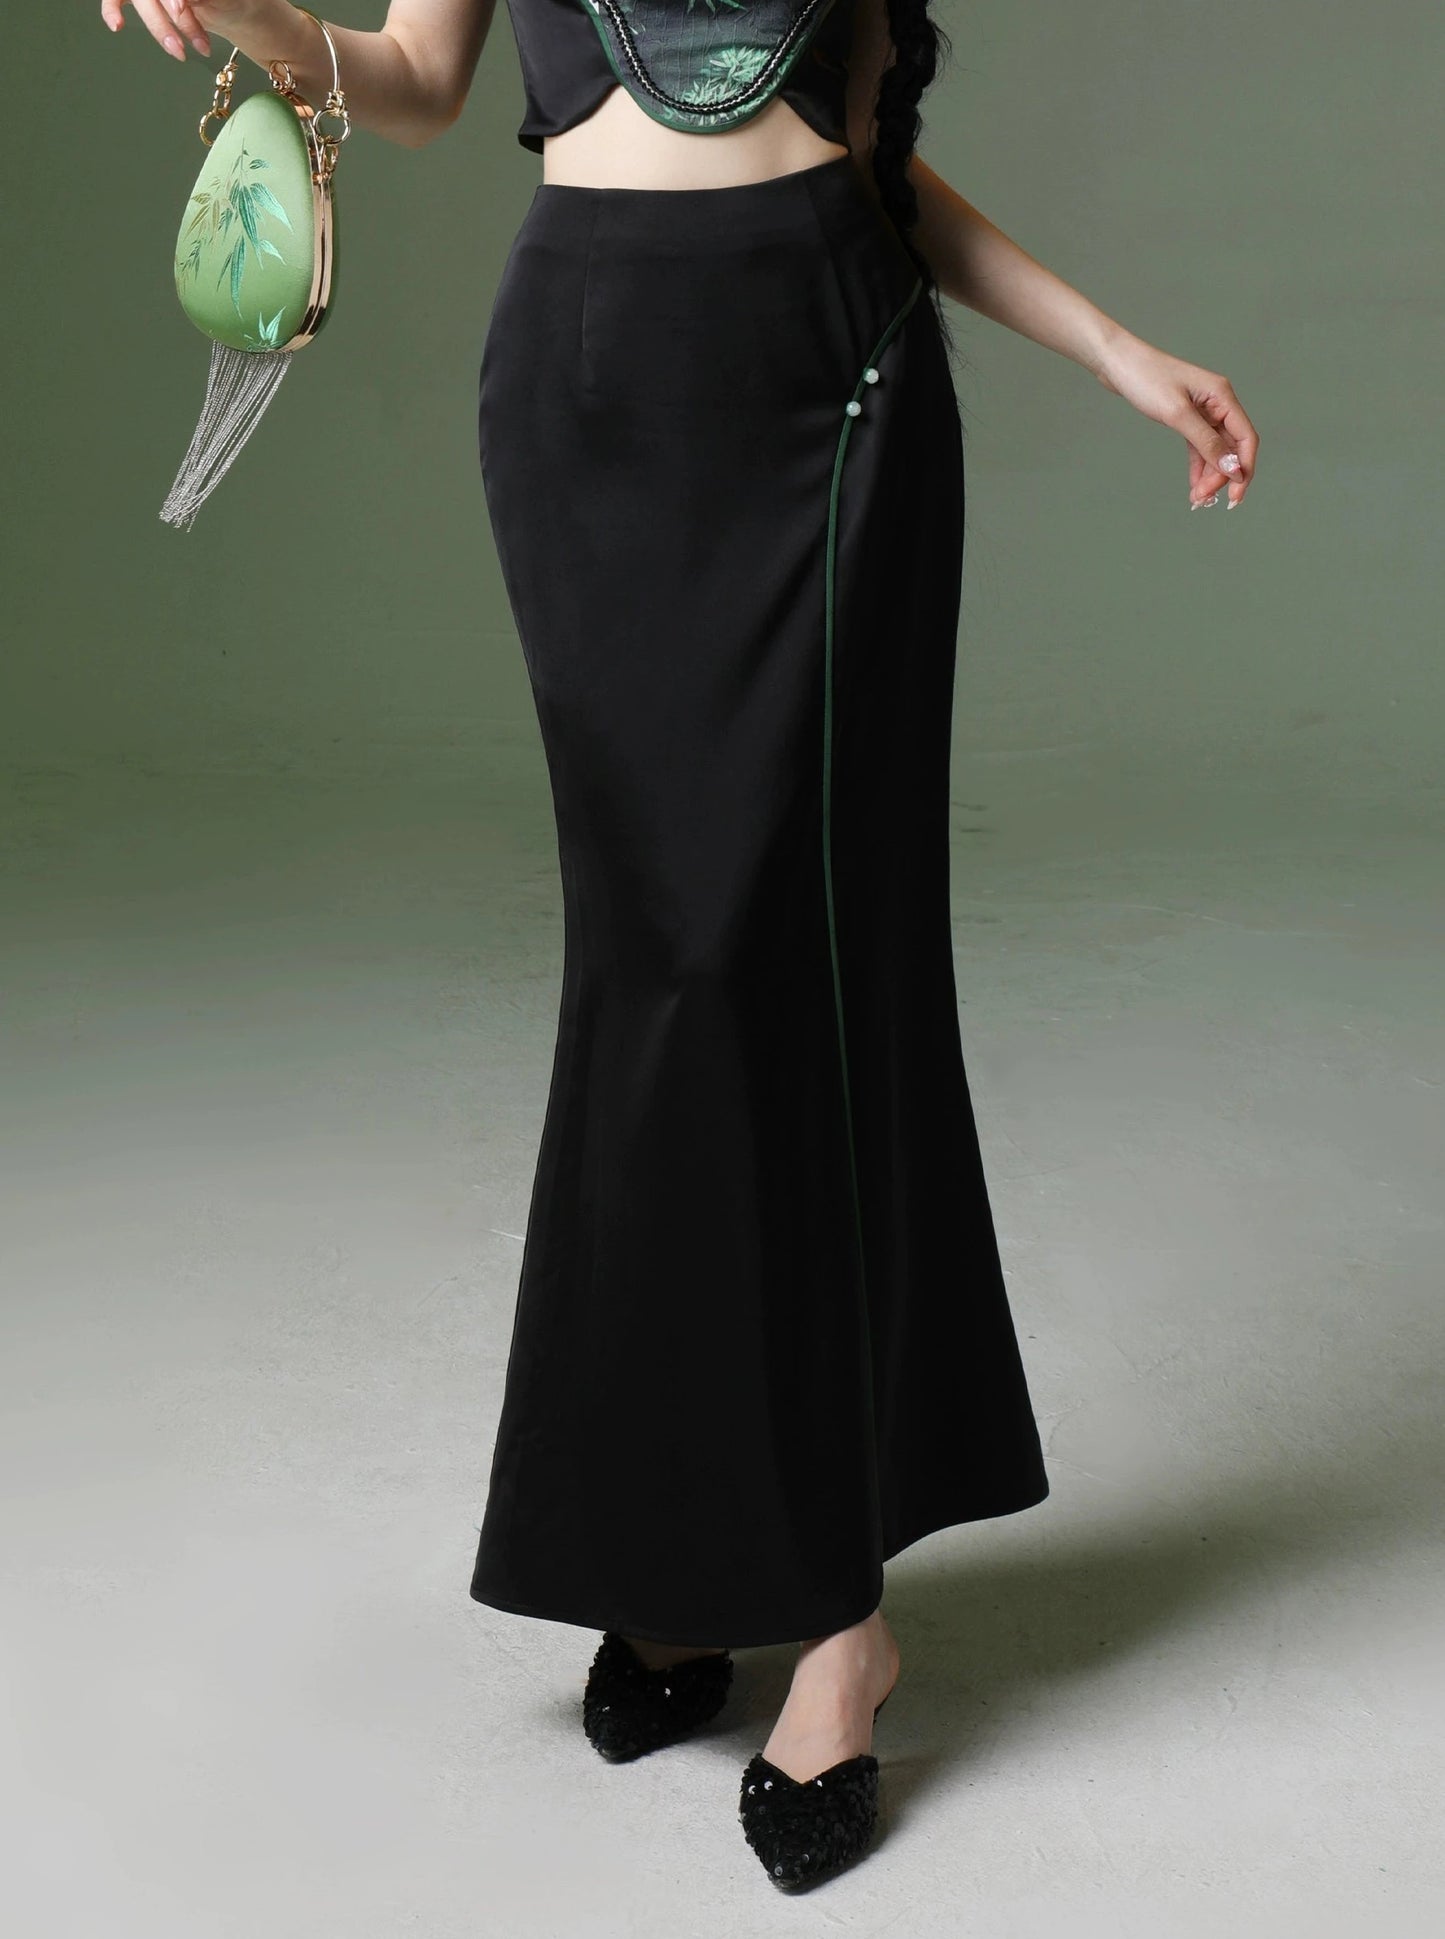 四斤自制熊猫竹原创新中式刺绣上衣、裙子和薄夏装两件套